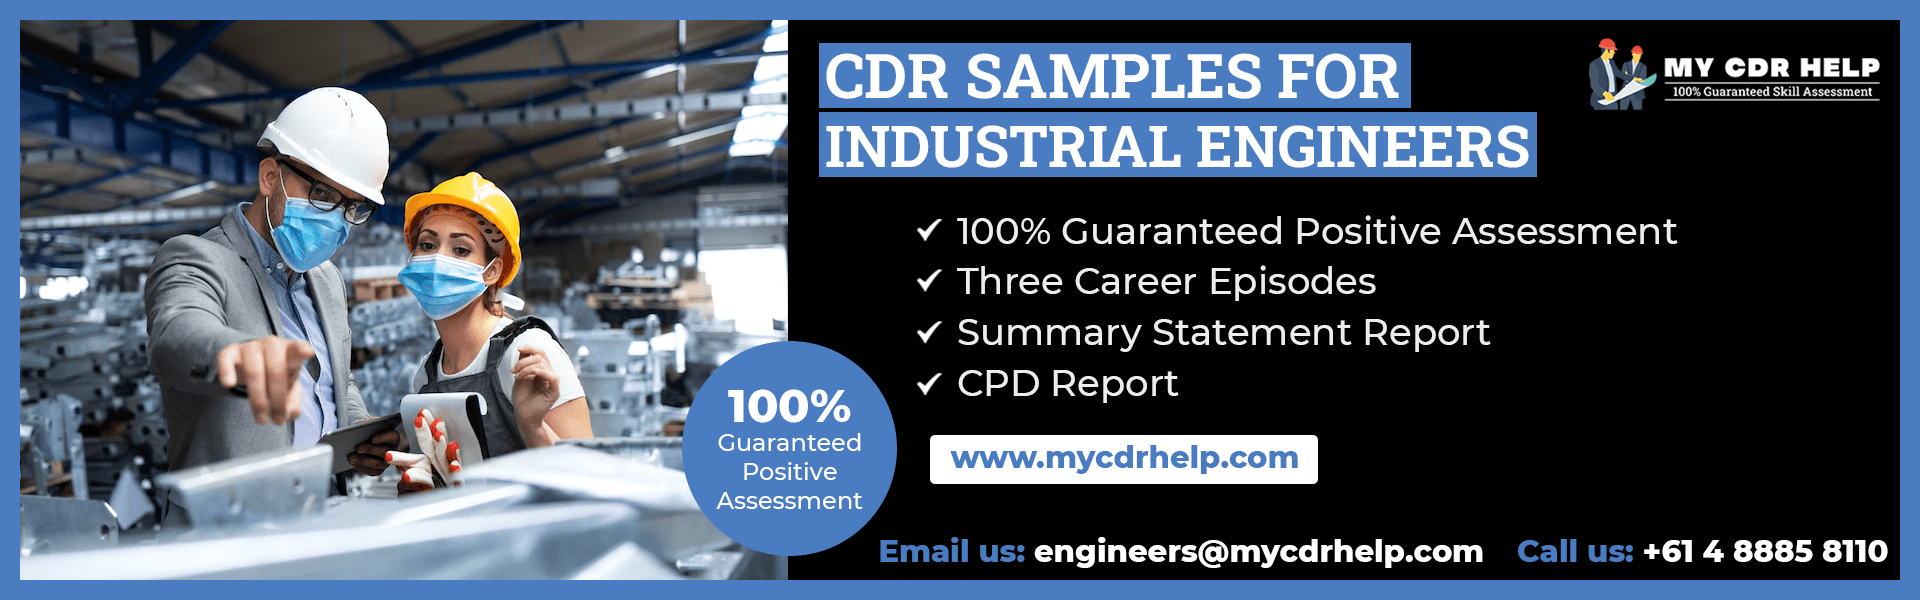 Industrial Engineer CDR Sample